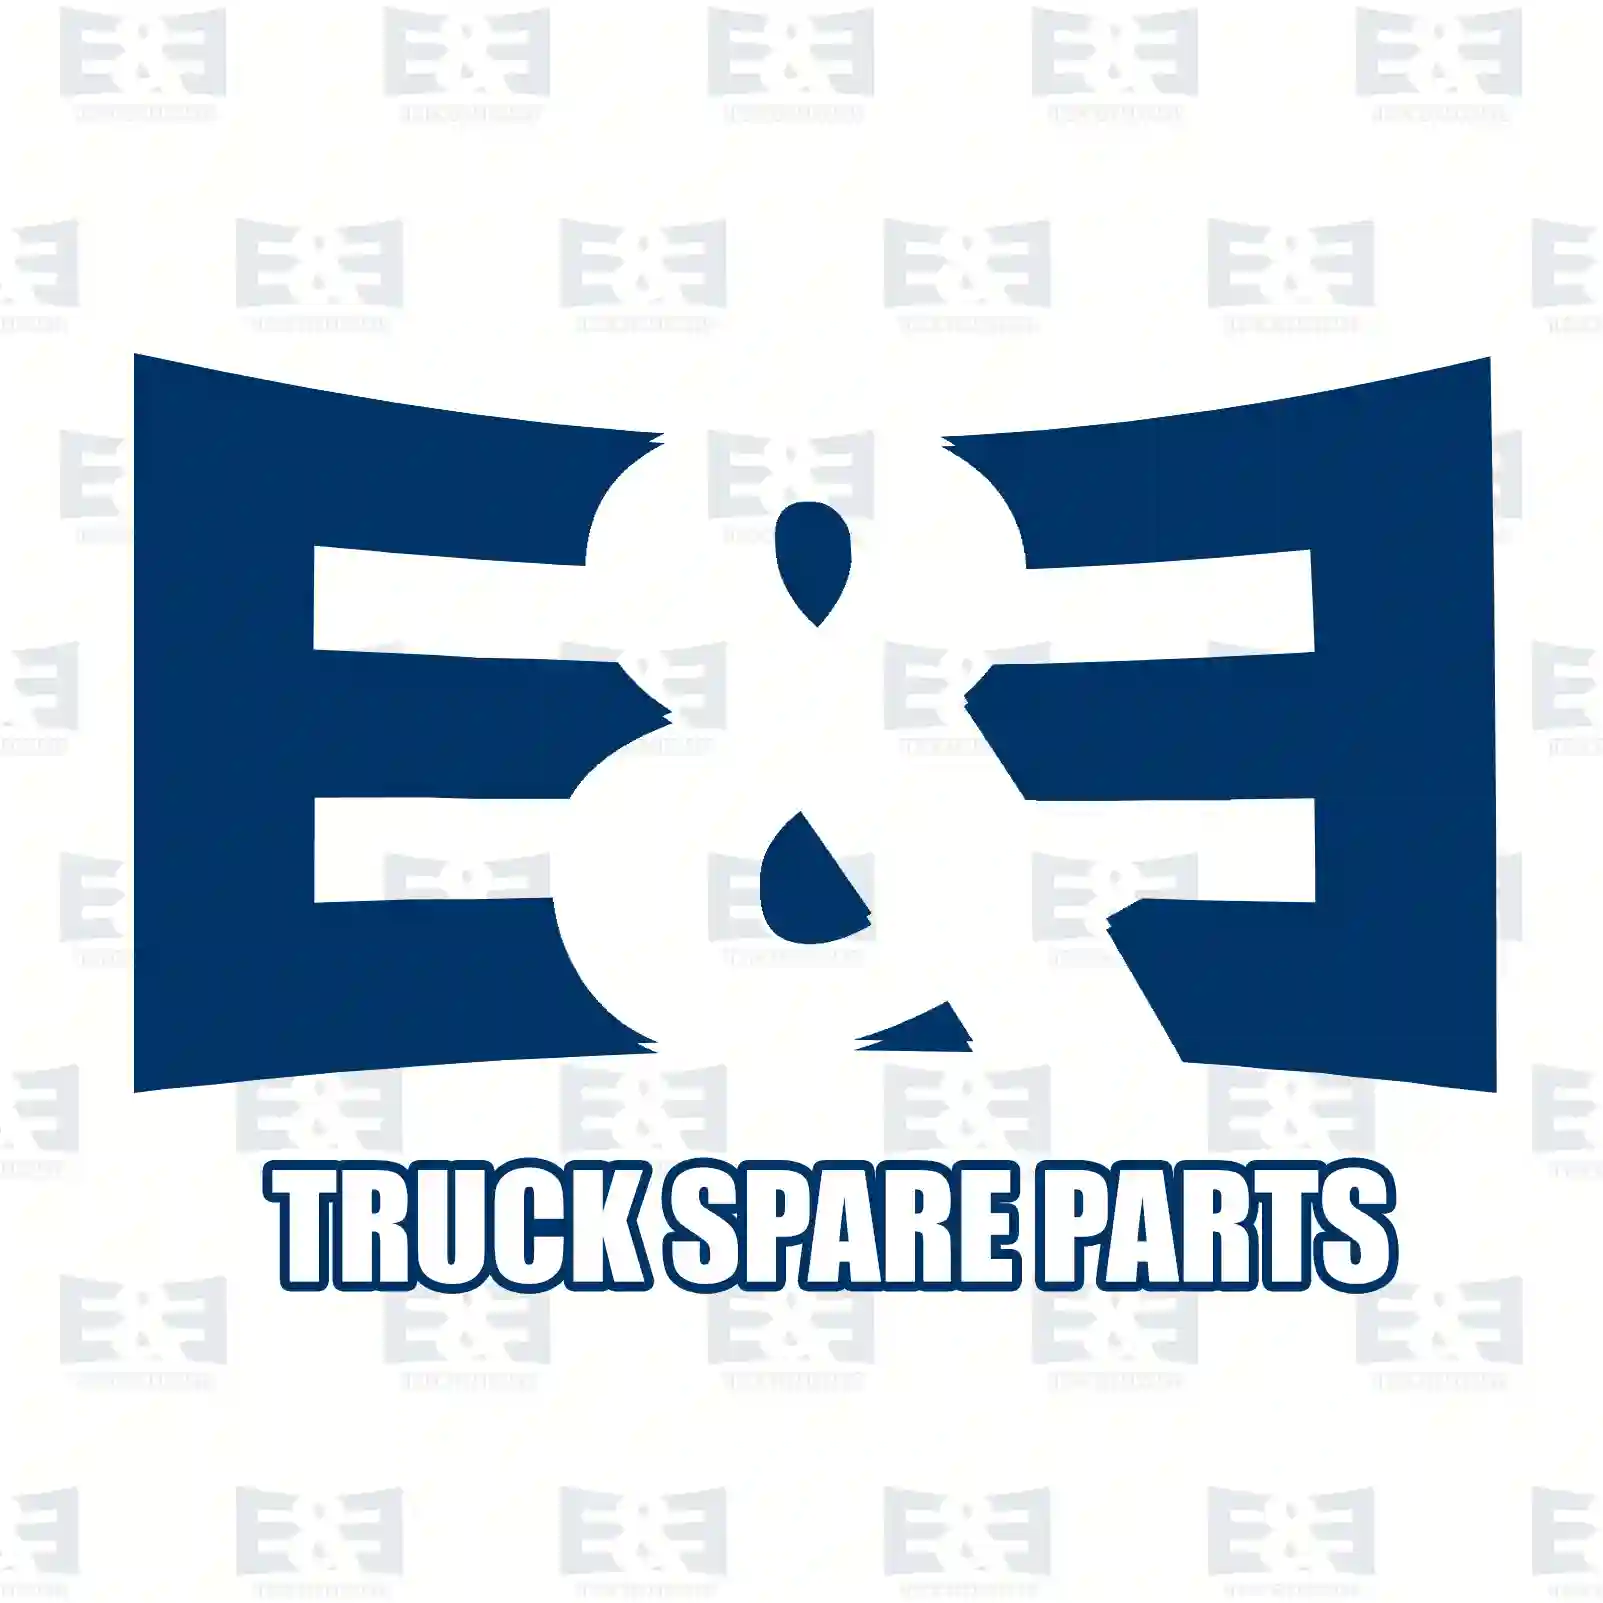 King pin kit, 2E2279084, 3573300019S1, 6553300119S1 ||  2E2279084 E&E Truck Spare Parts | Truck Spare Parts, Auotomotive Spare Parts King pin kit, 2E2279084, 3573300019S1, 6553300119S1 ||  2E2279084 E&E Truck Spare Parts | Truck Spare Parts, Auotomotive Spare Parts